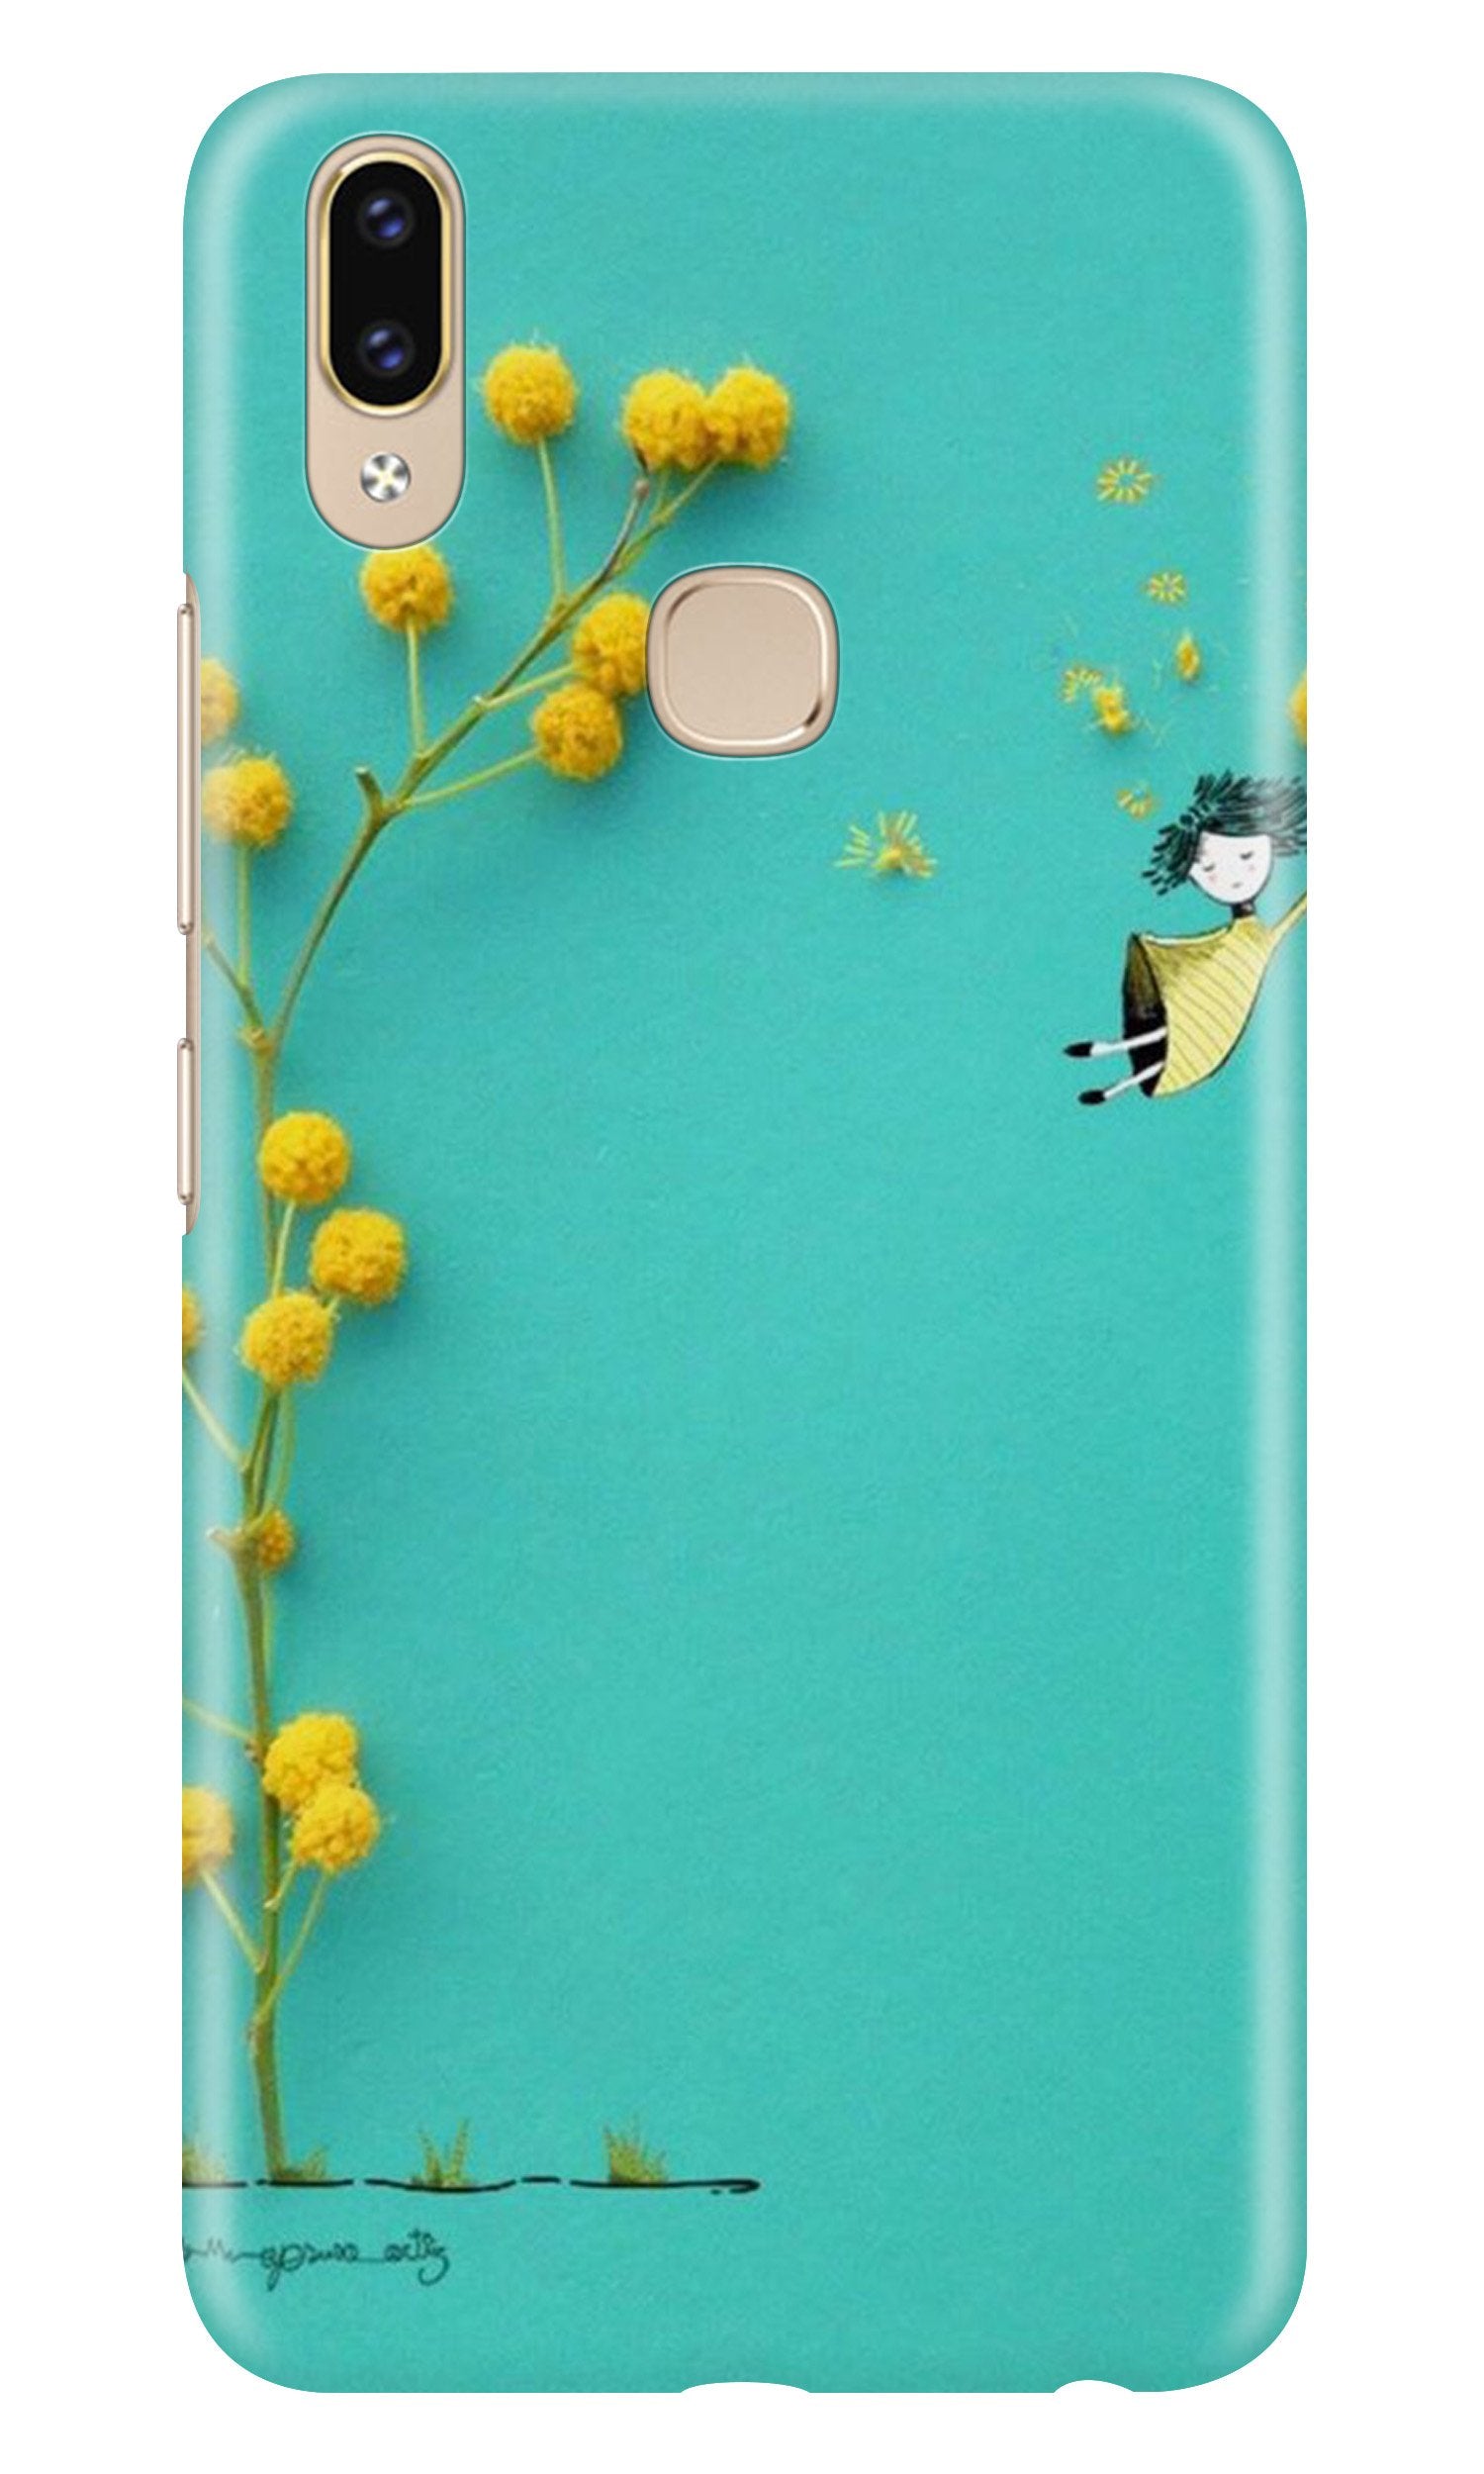 Flowers Girl Case for Zenfone 5z (Design No. 216)